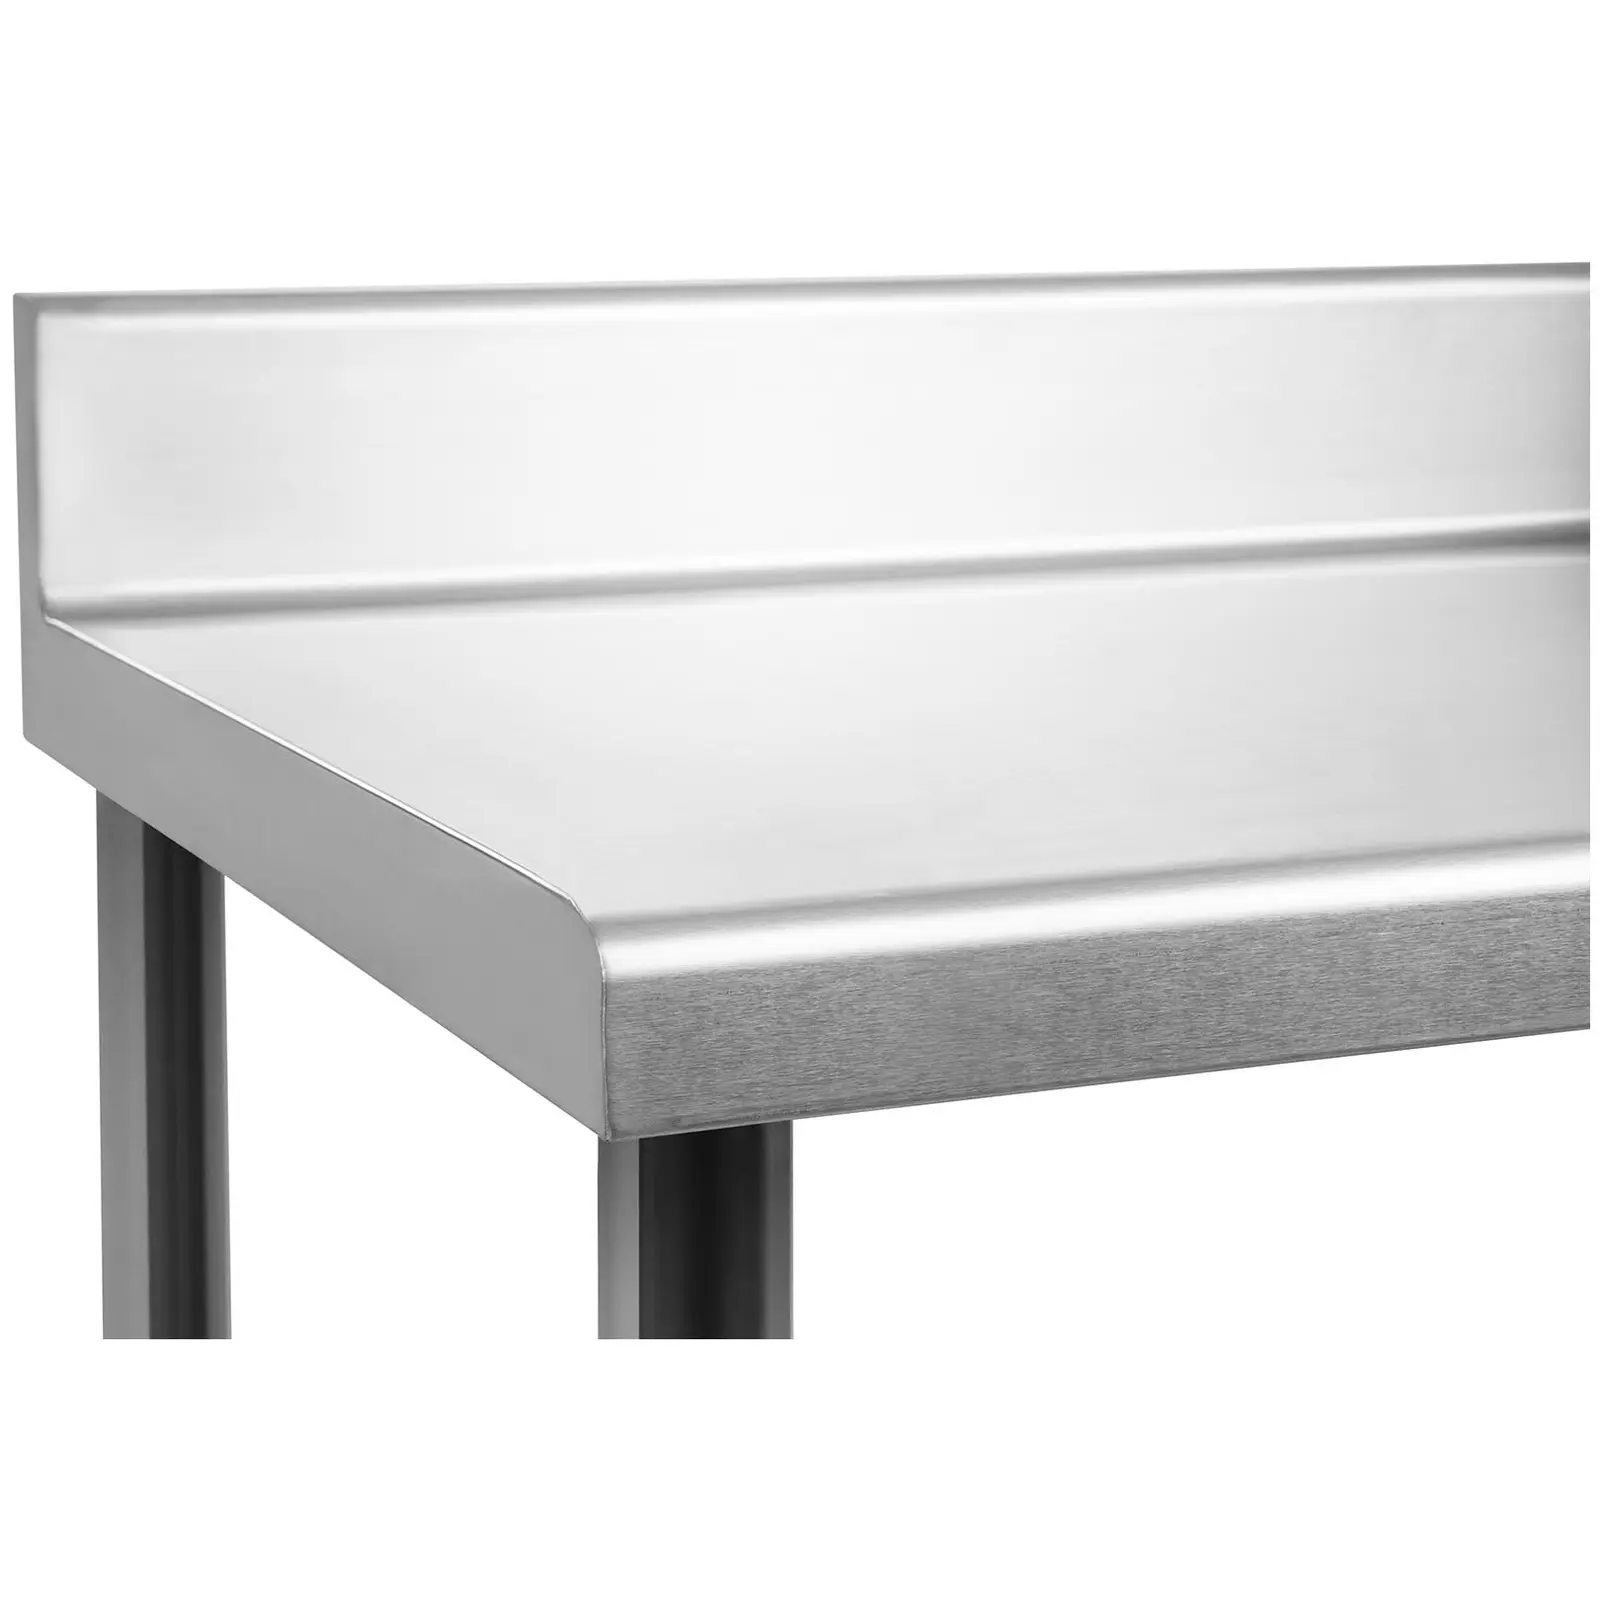 Nerezový pracovní stůl - 180 x 60 cm - s lemy - 182 kg